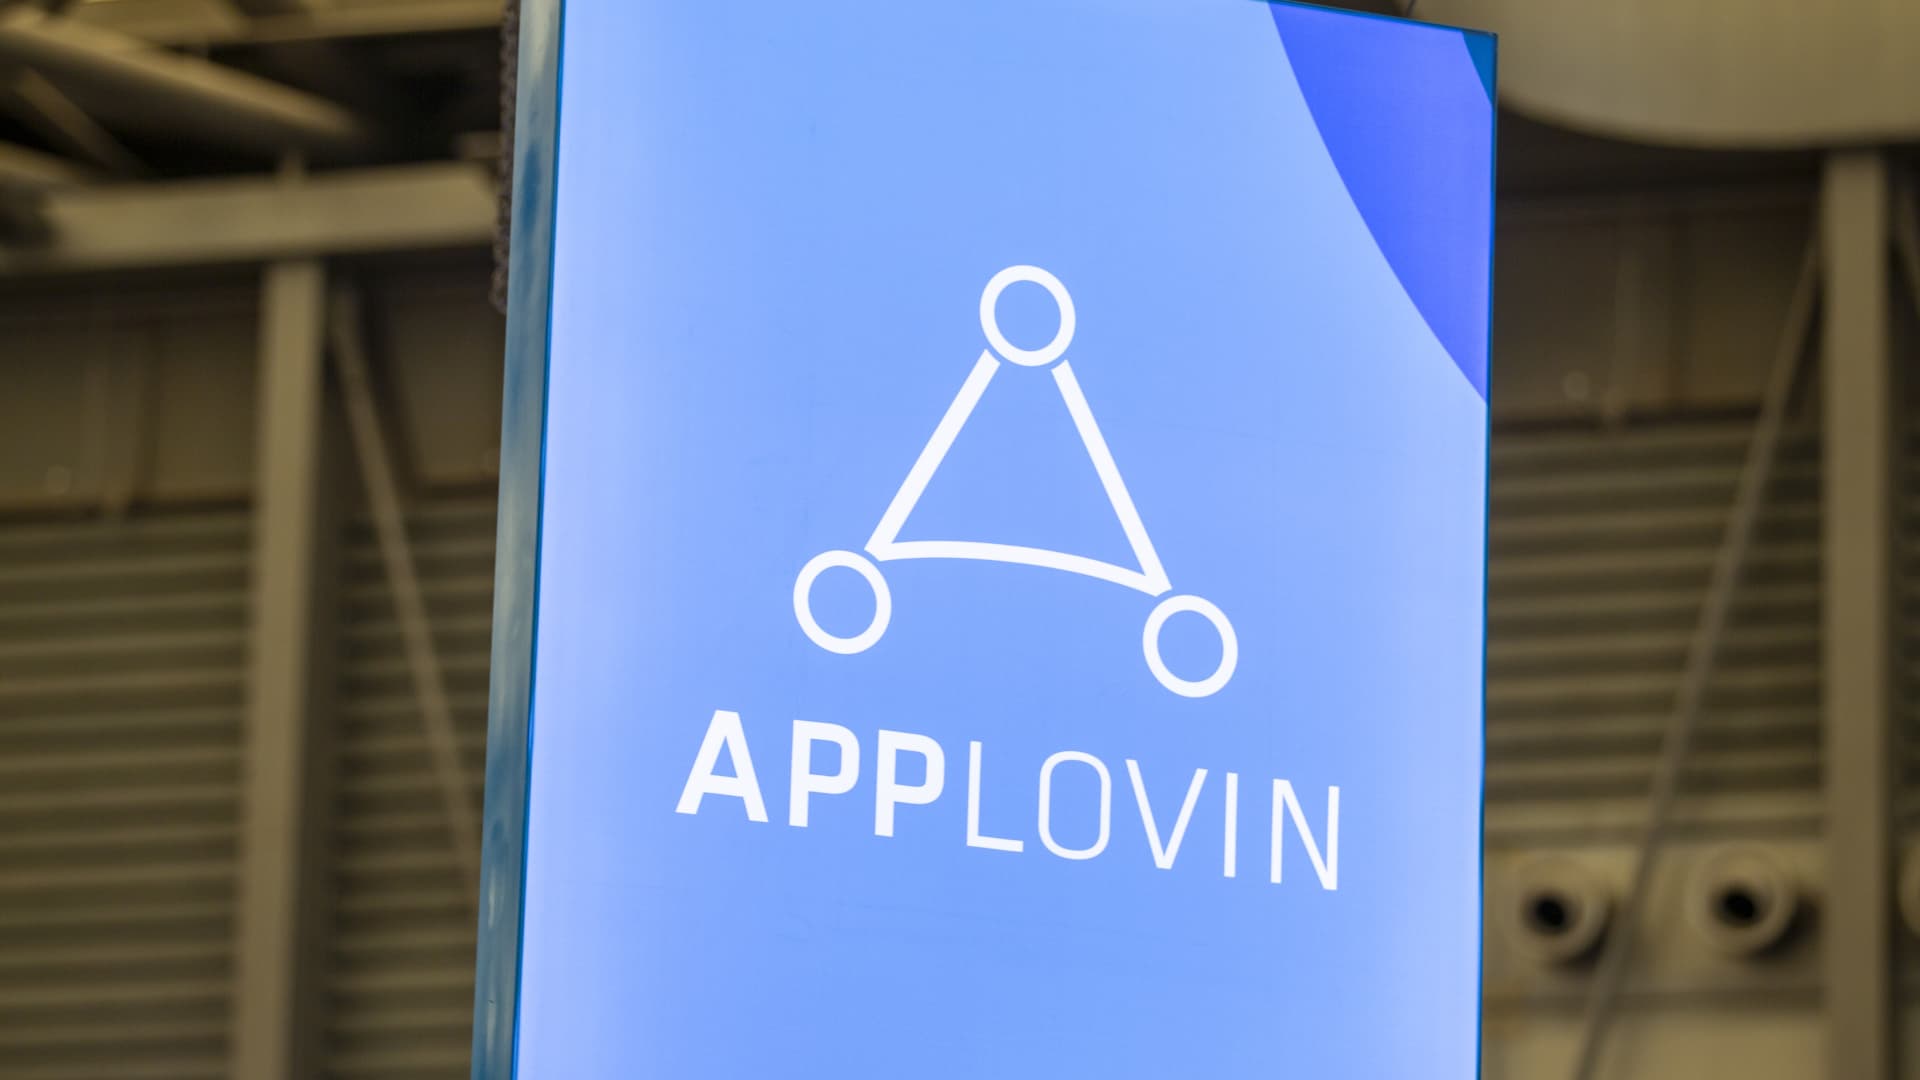 AppLovin abandons effort to buy Unity after $20 billion bid rejected